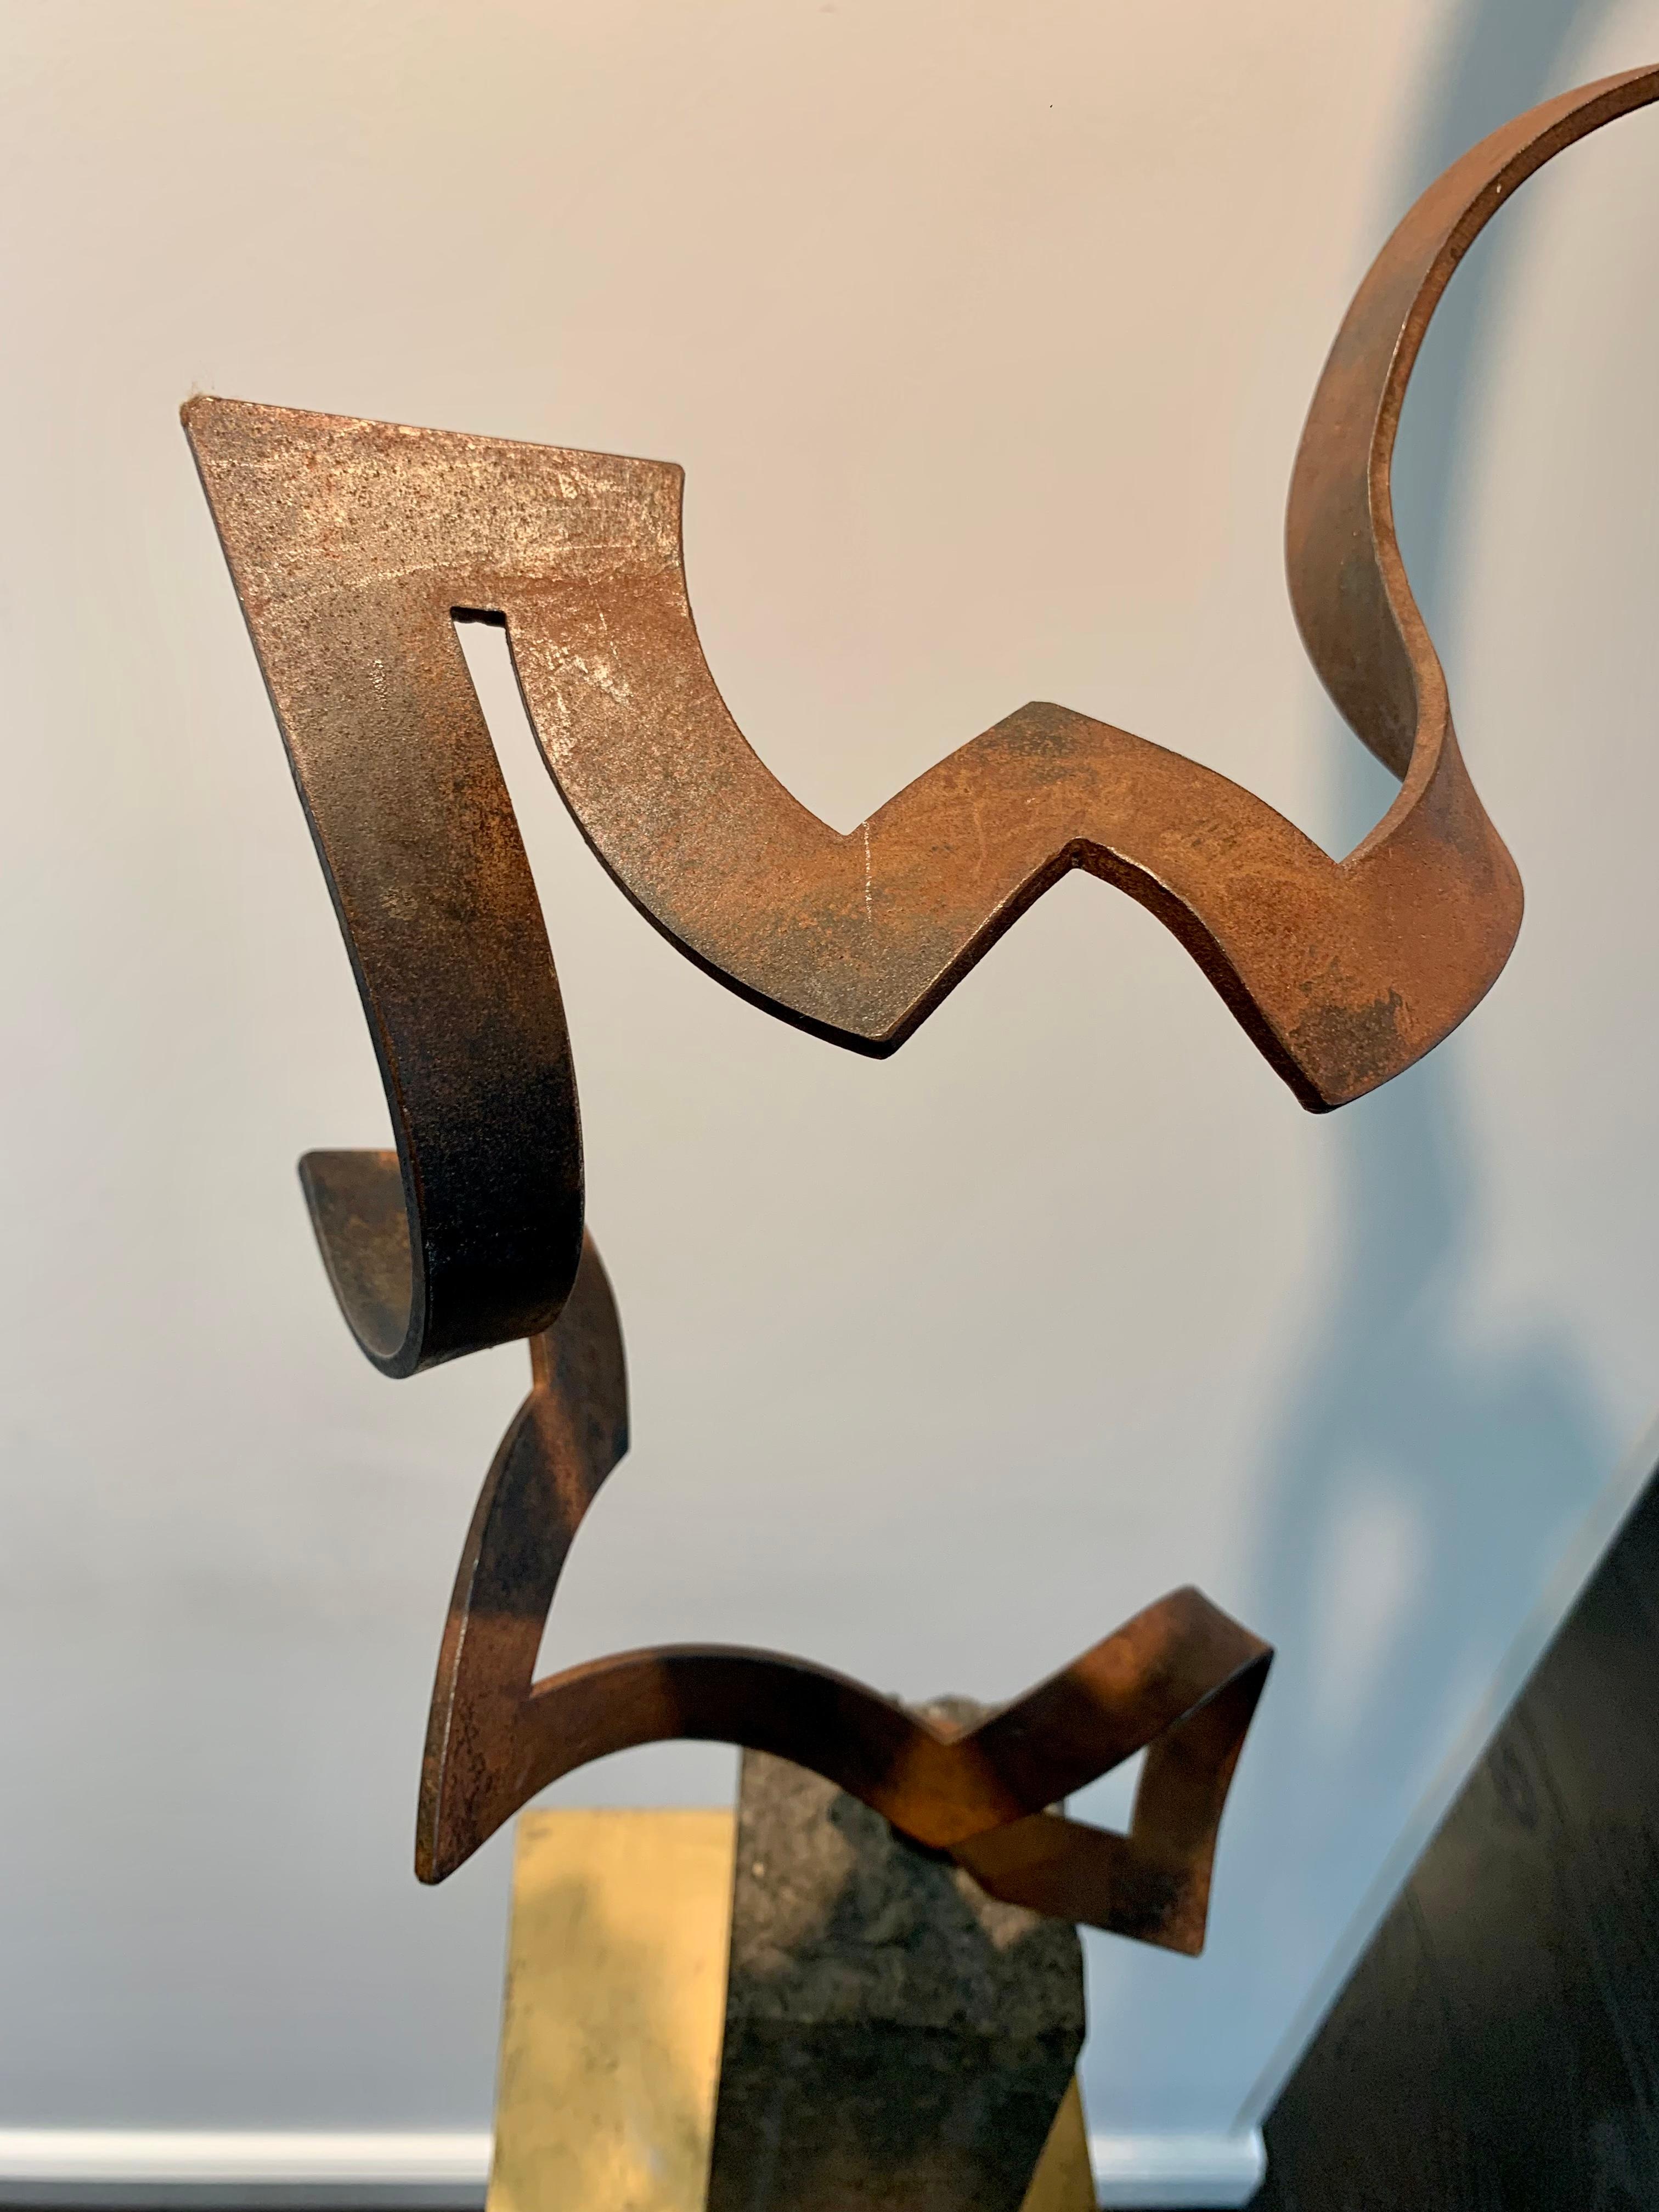 Steel Dance by Kuno Vollet Contemporary Steel Sculpture for indoor or outdoor For Sale 4